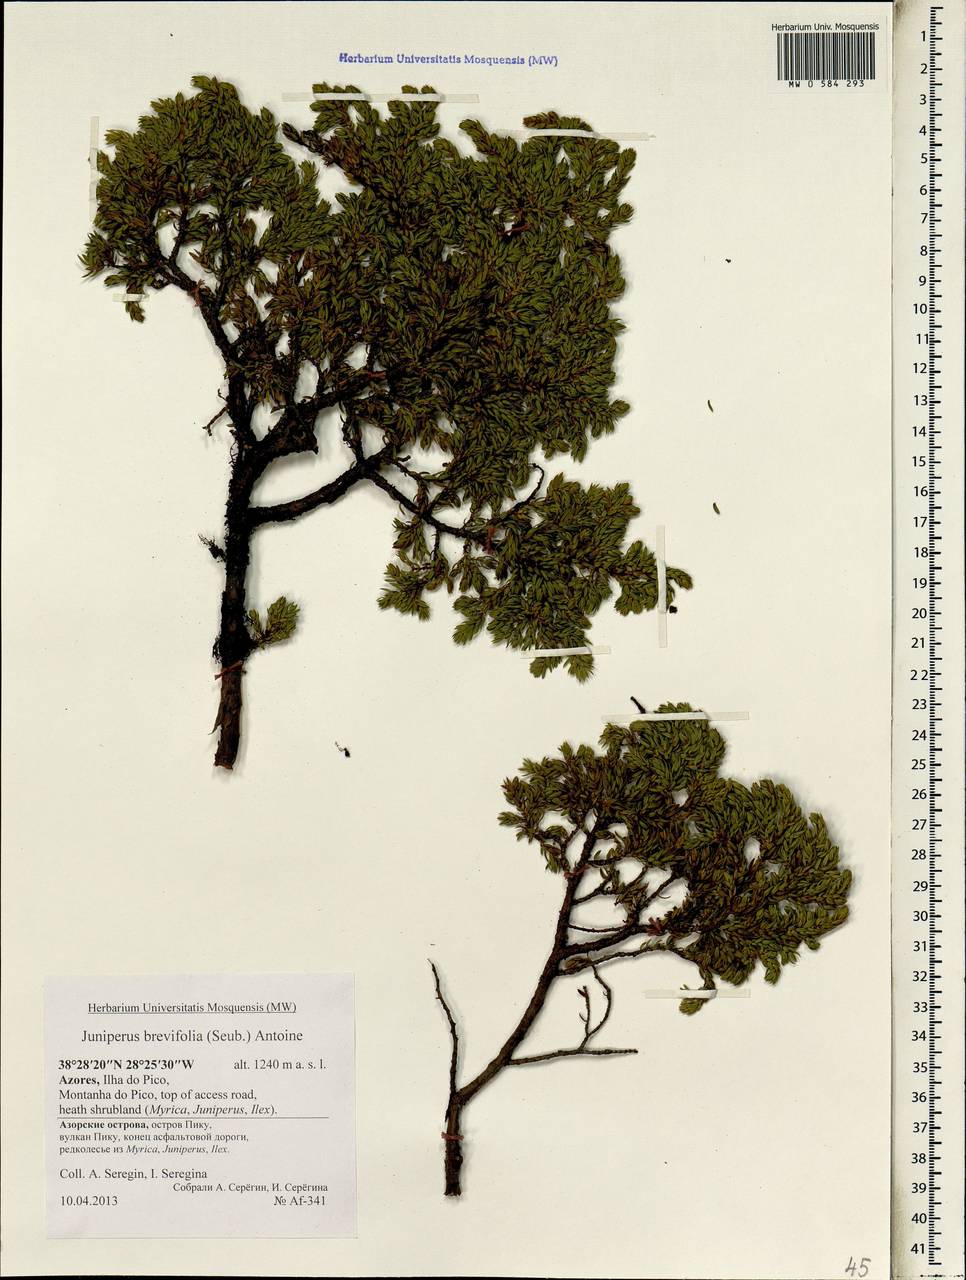 Juniperus brevifolia (Seub.) Antoine, Africa (AFR) (Portugal)